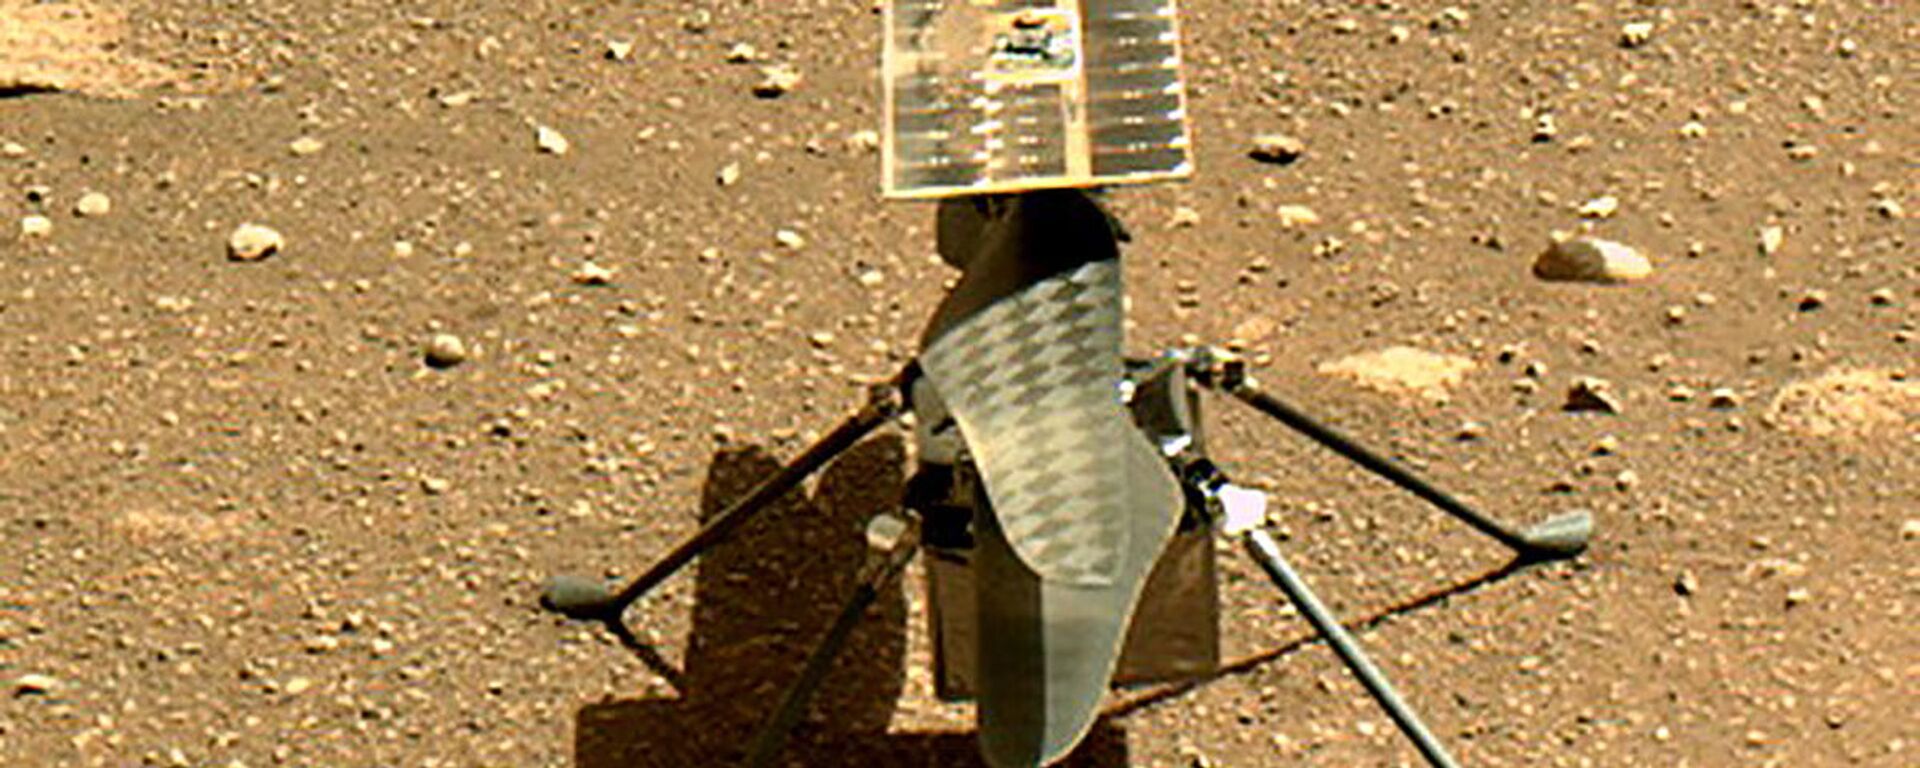 وكالة الفضاء الأمريكية ناسا تطلق أول طائرة حوامة إنجينيويتي فوق سطح كوكب المريخ - سبوتنيك عربي, 1920, 26.01.2022